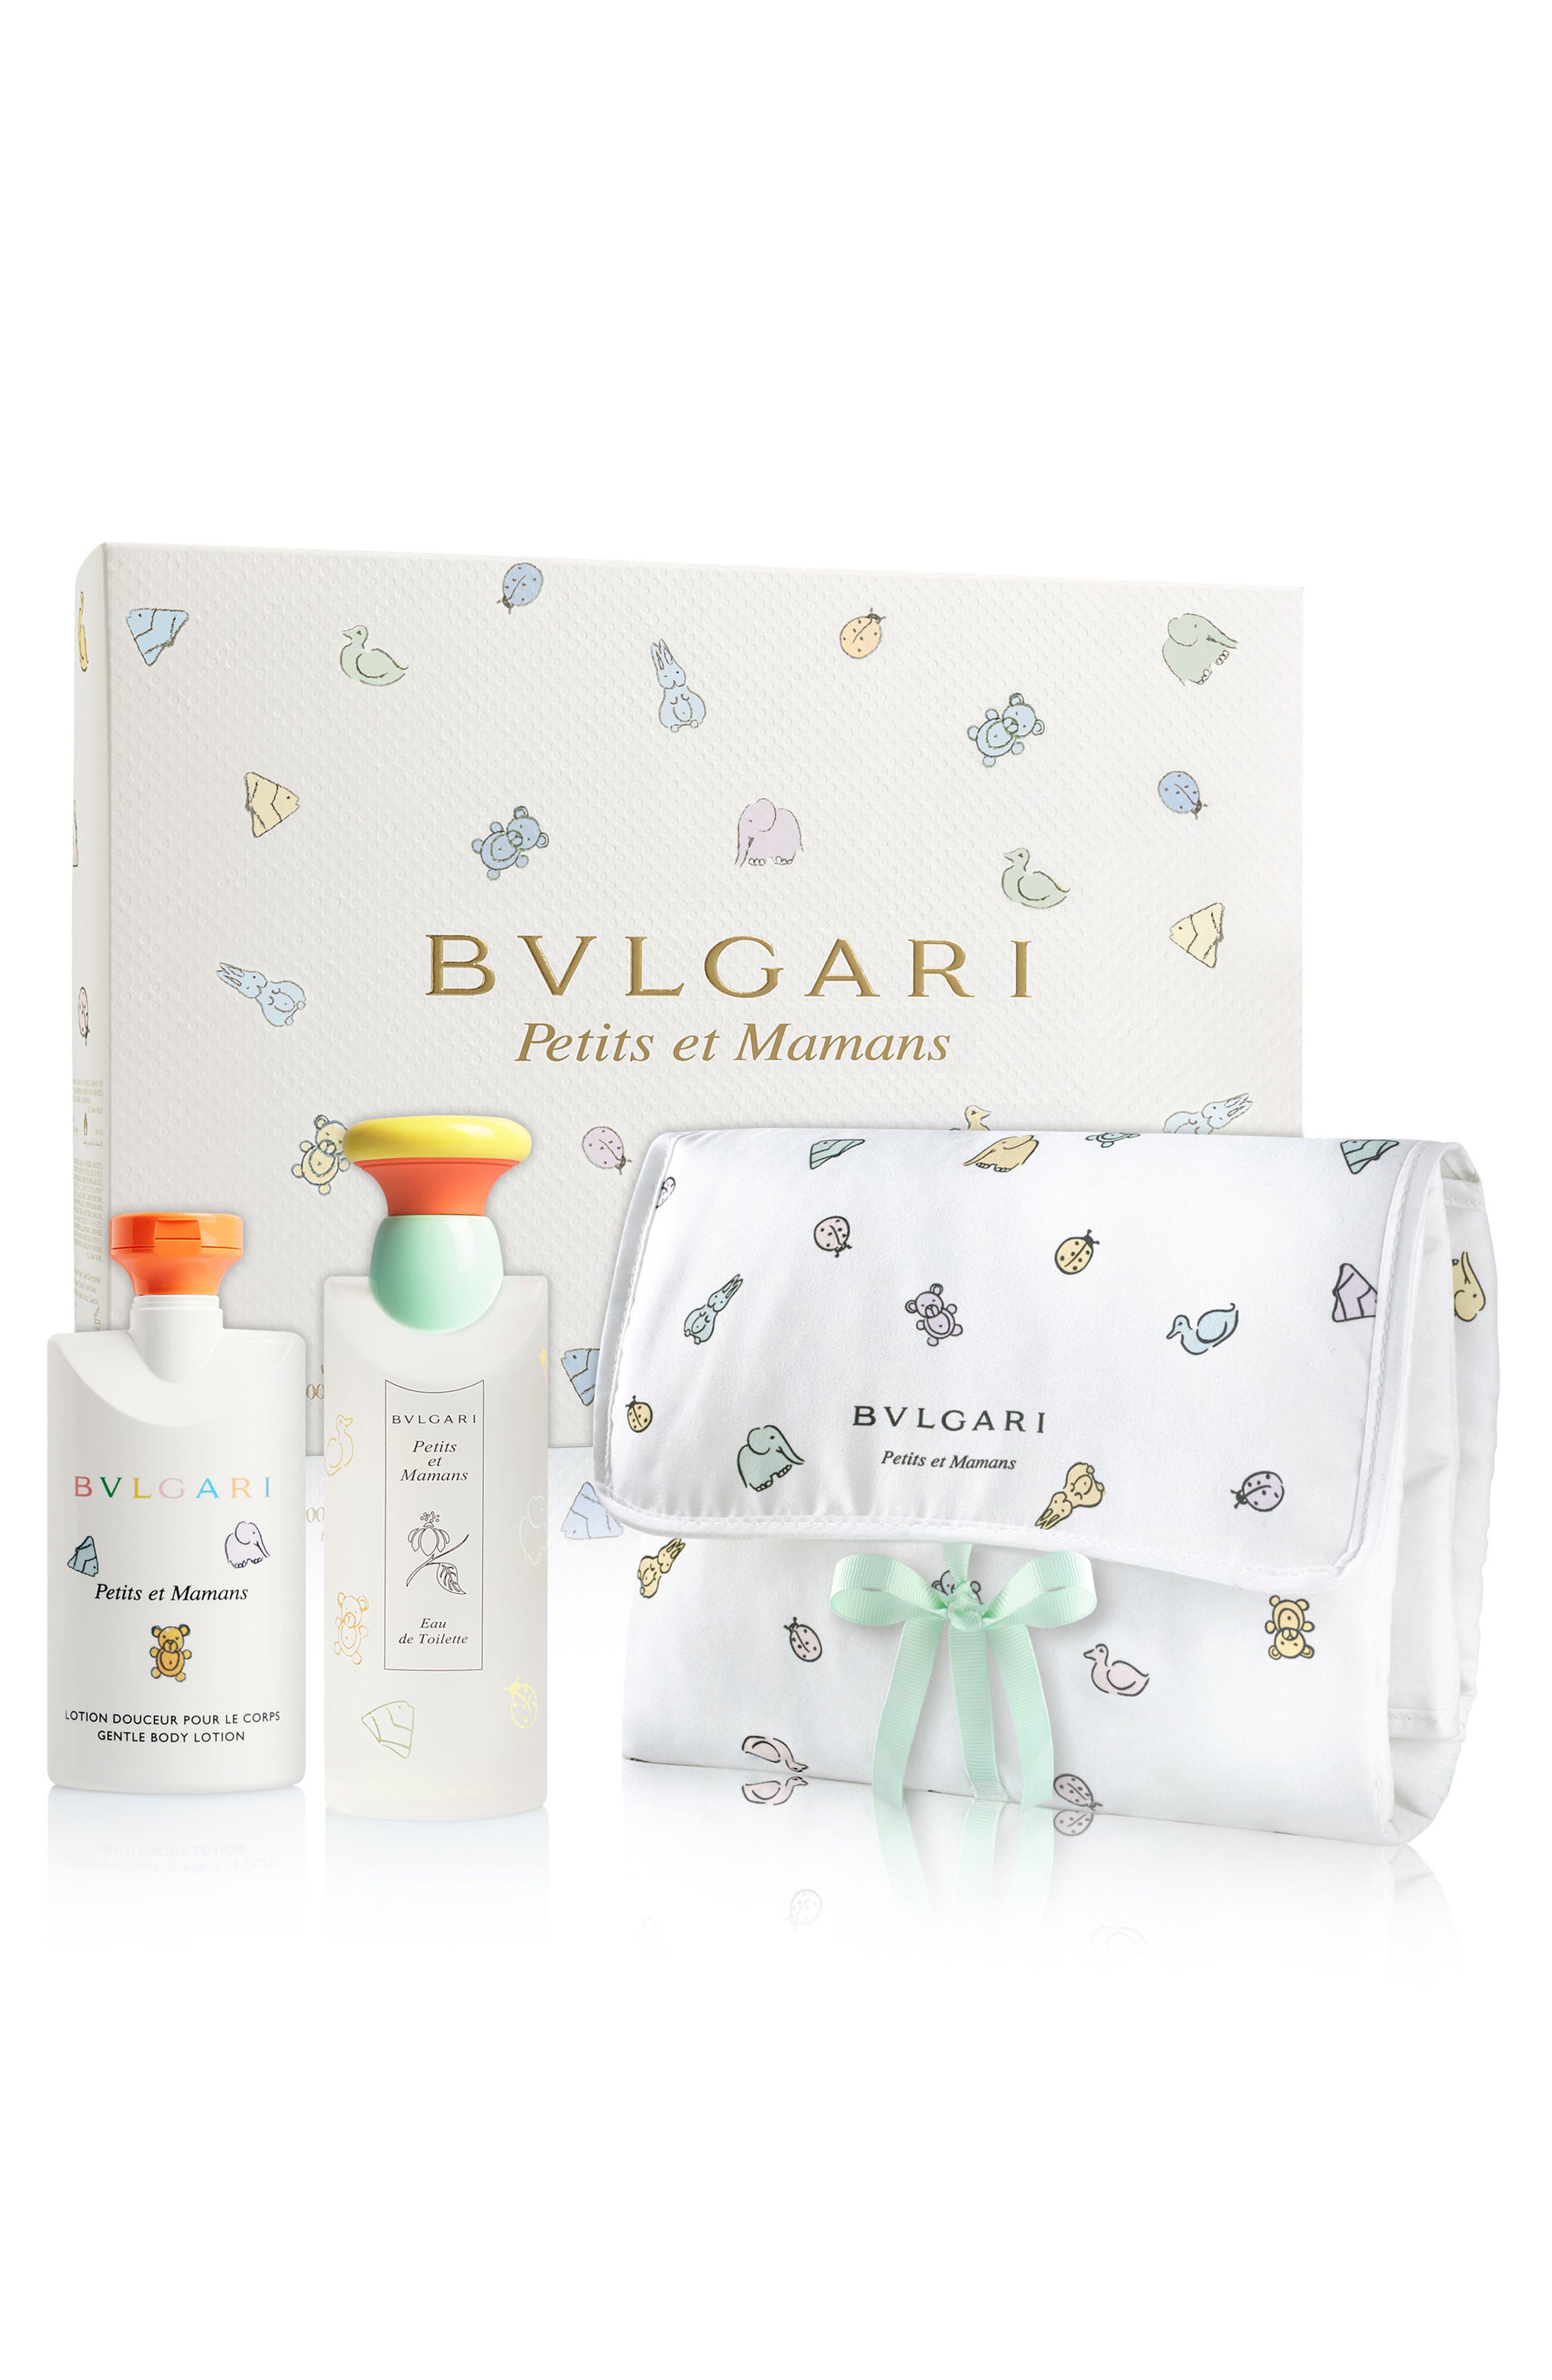 bvlgari baby perfume set